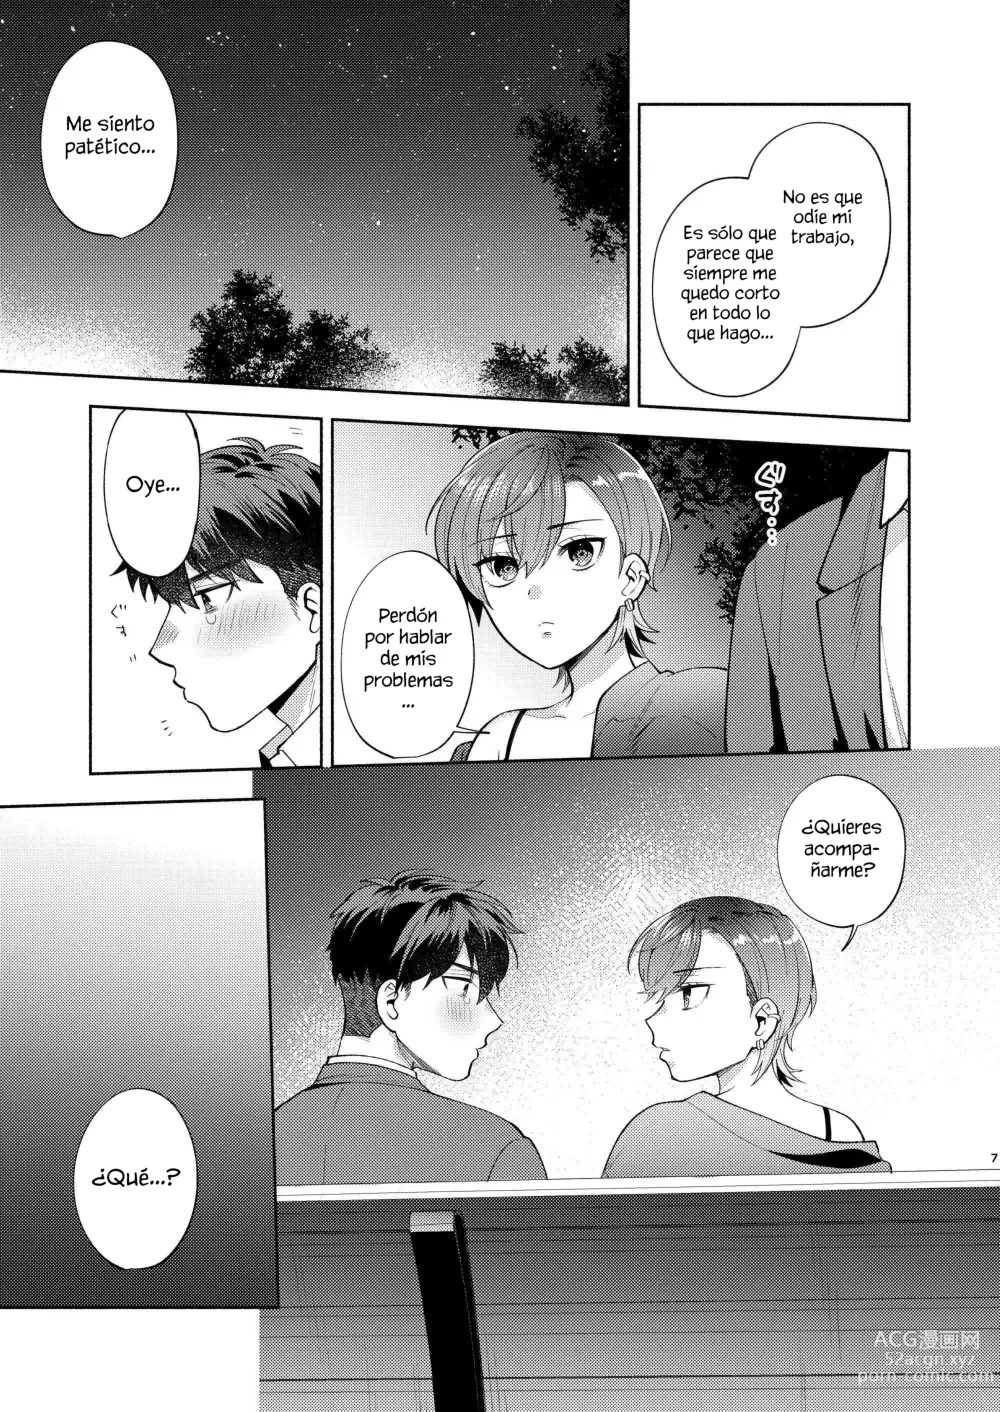 Page 6 of doujinshi Hiyoko es una entrometida